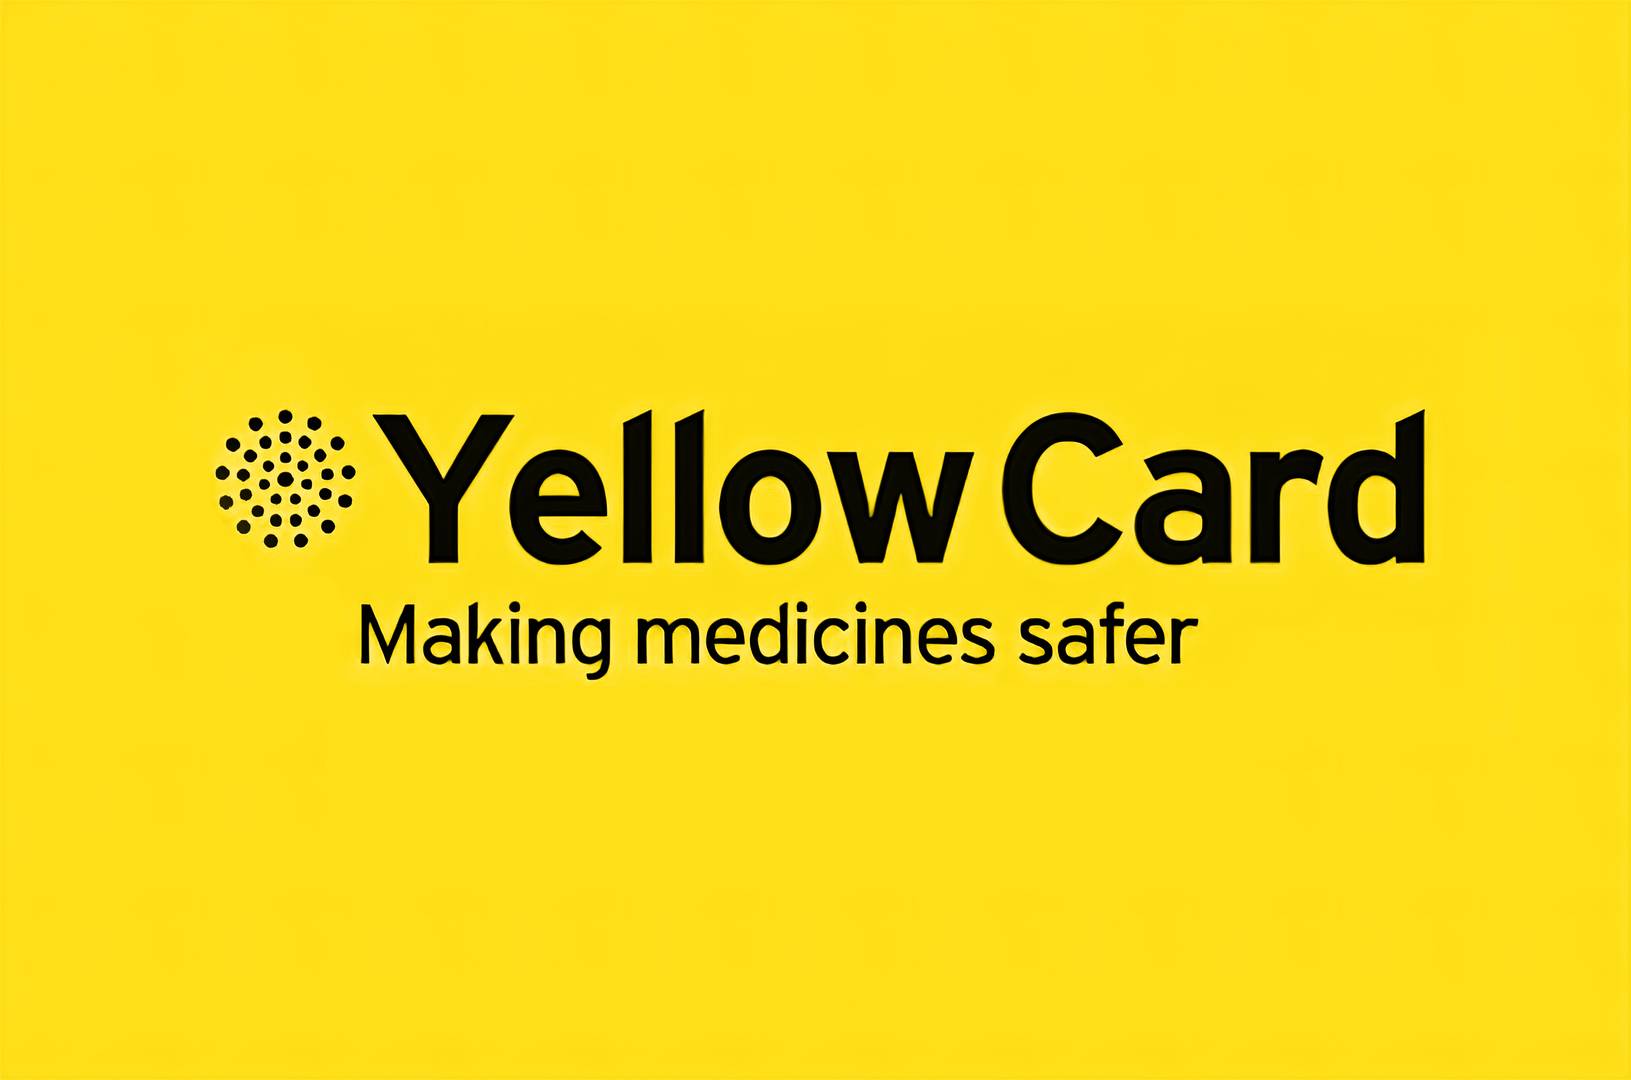 Логотип системы Yellow Card, использующейся в Великобритании